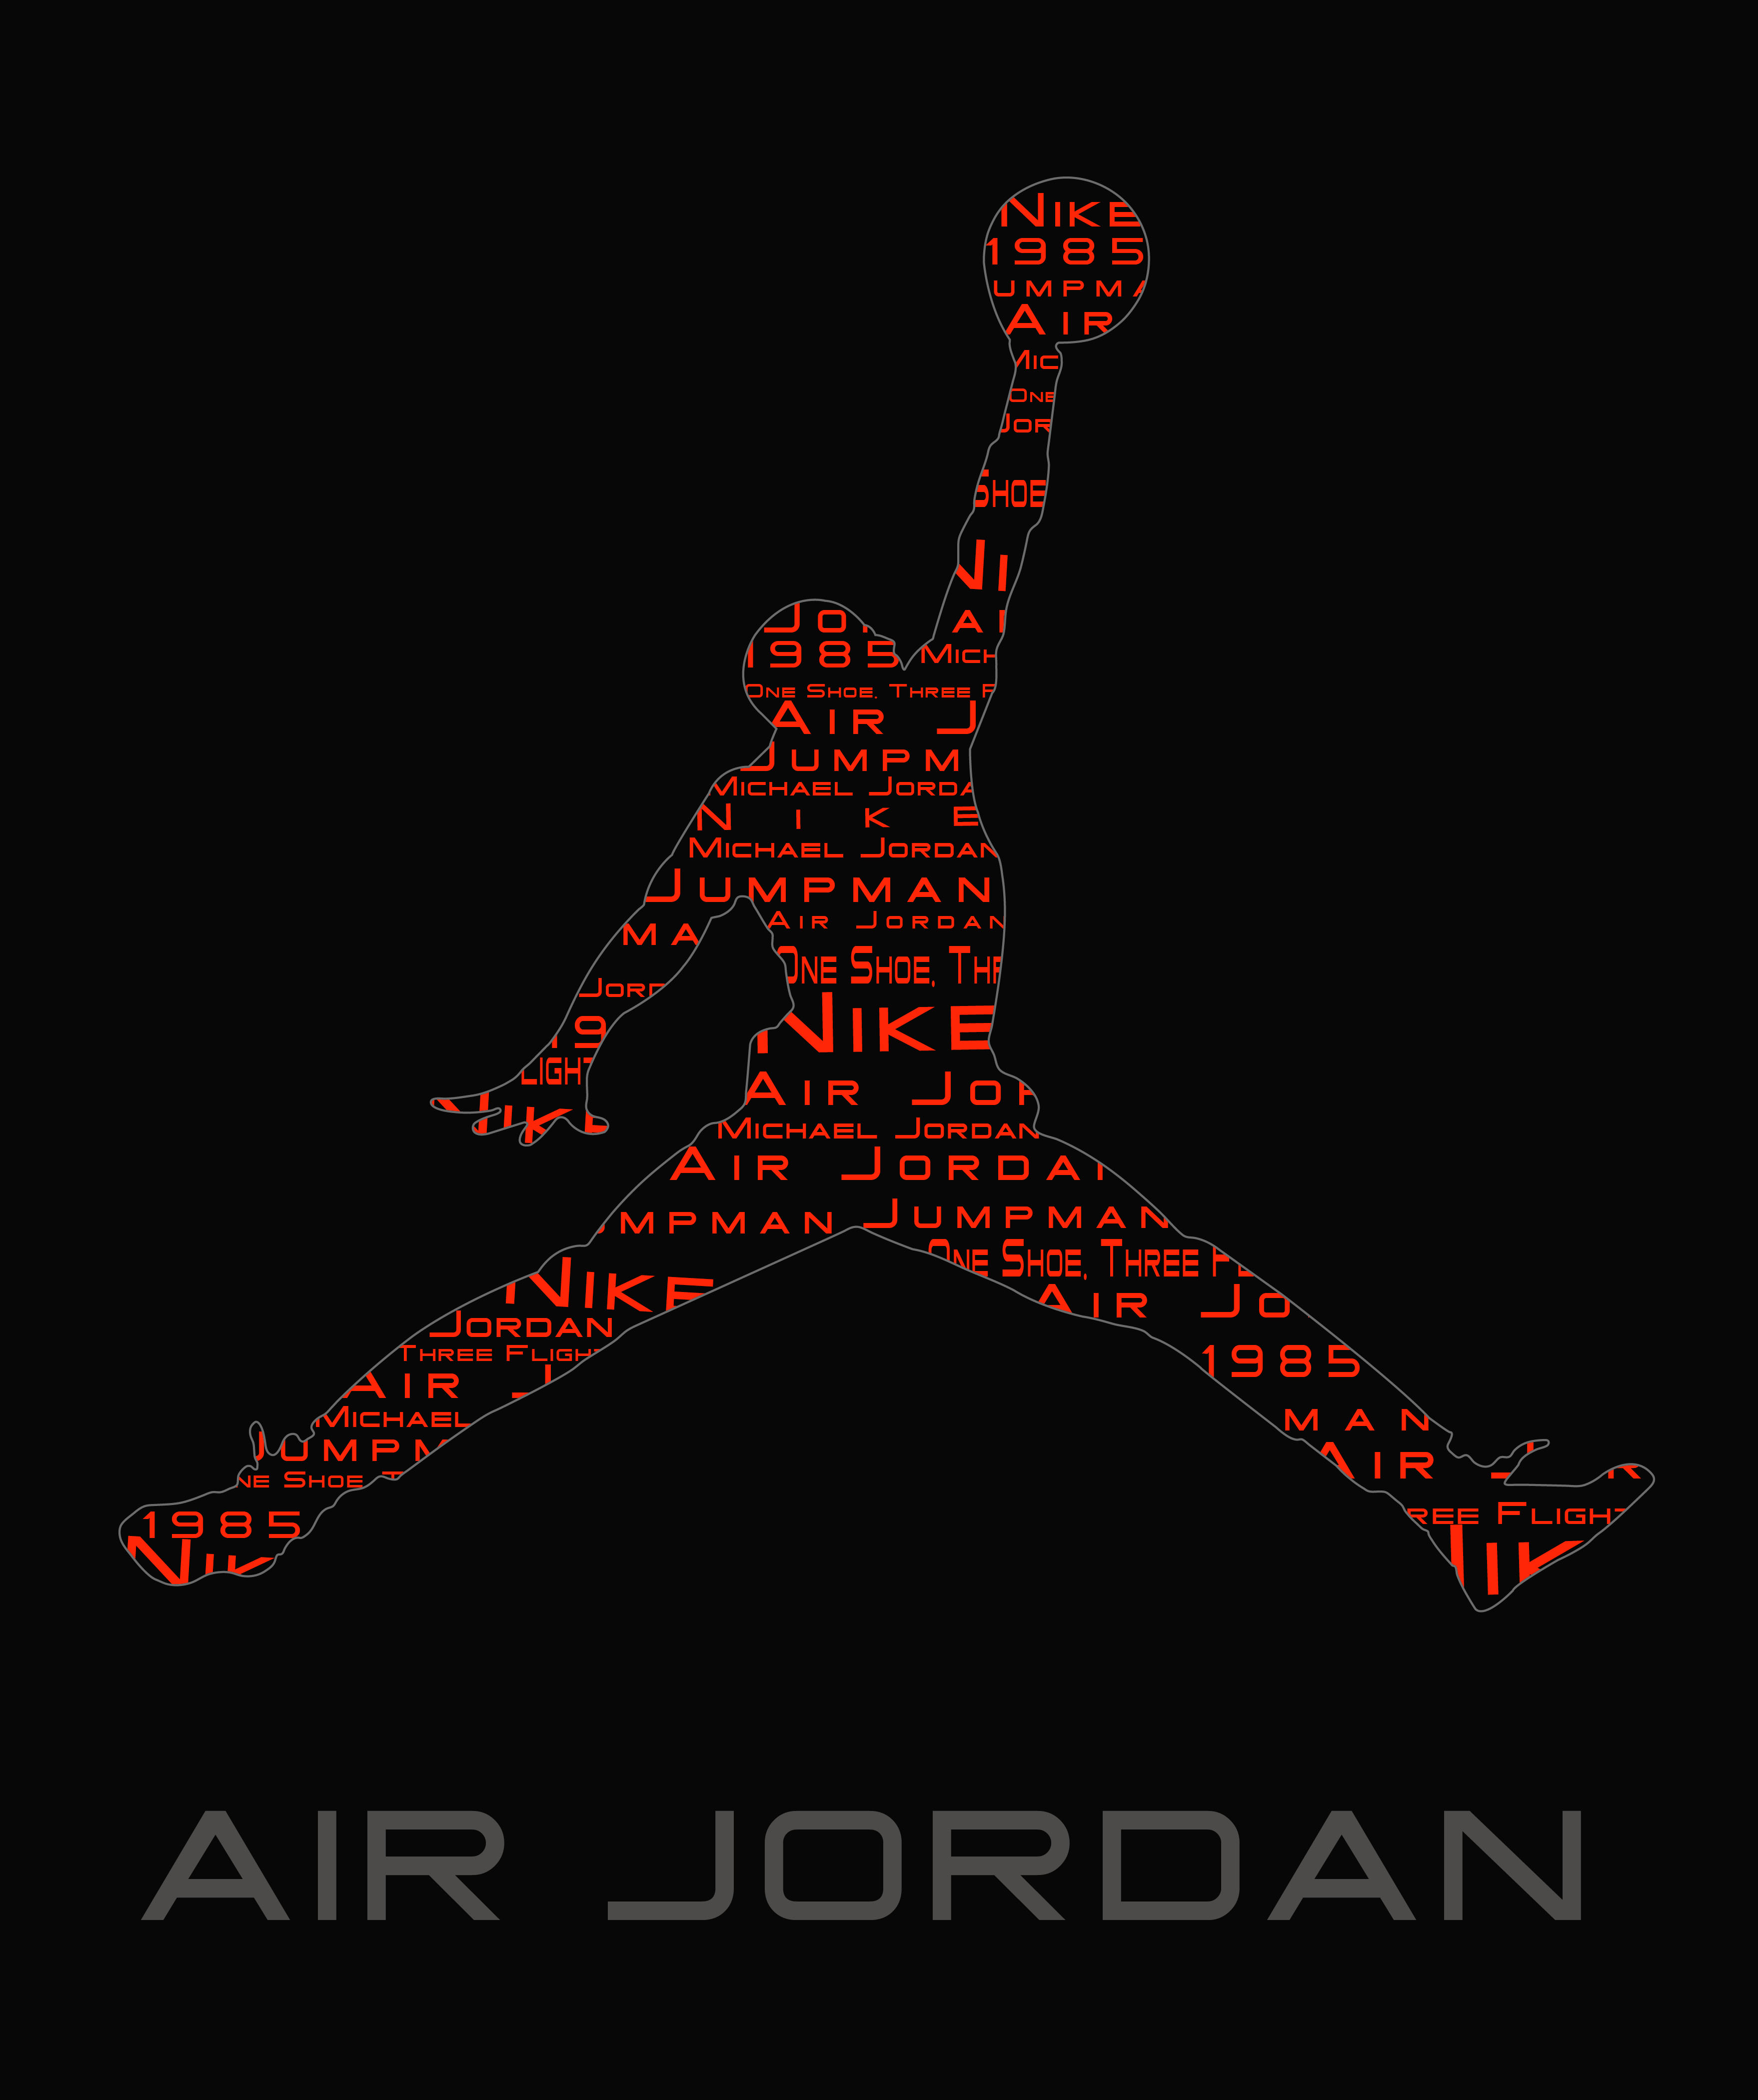 Air Jordan Logo Image Thecelebritypix